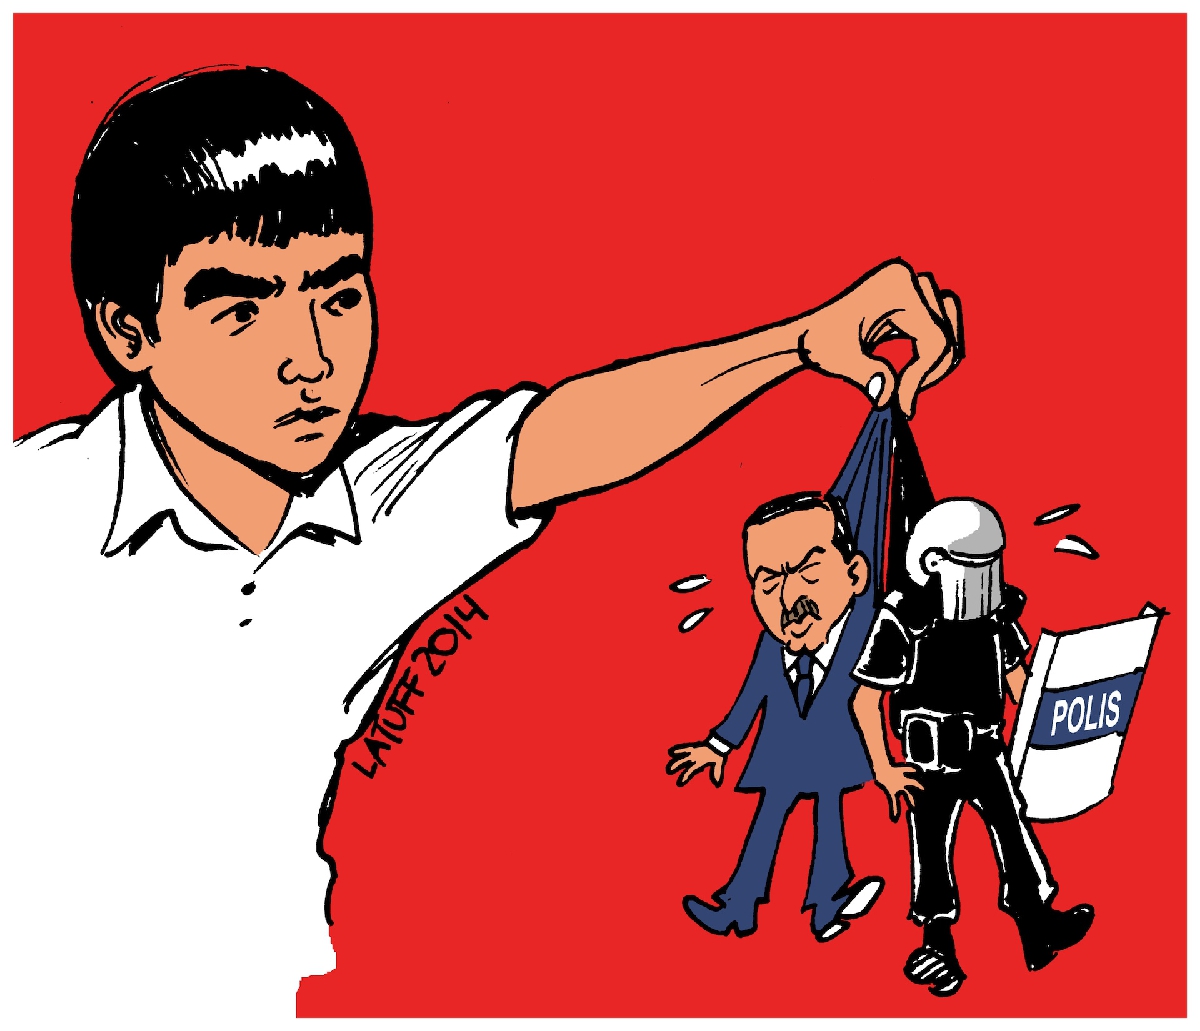 Çizgili muhalefetin ustası Carlos Latuff'un eserleri Türkiye'de